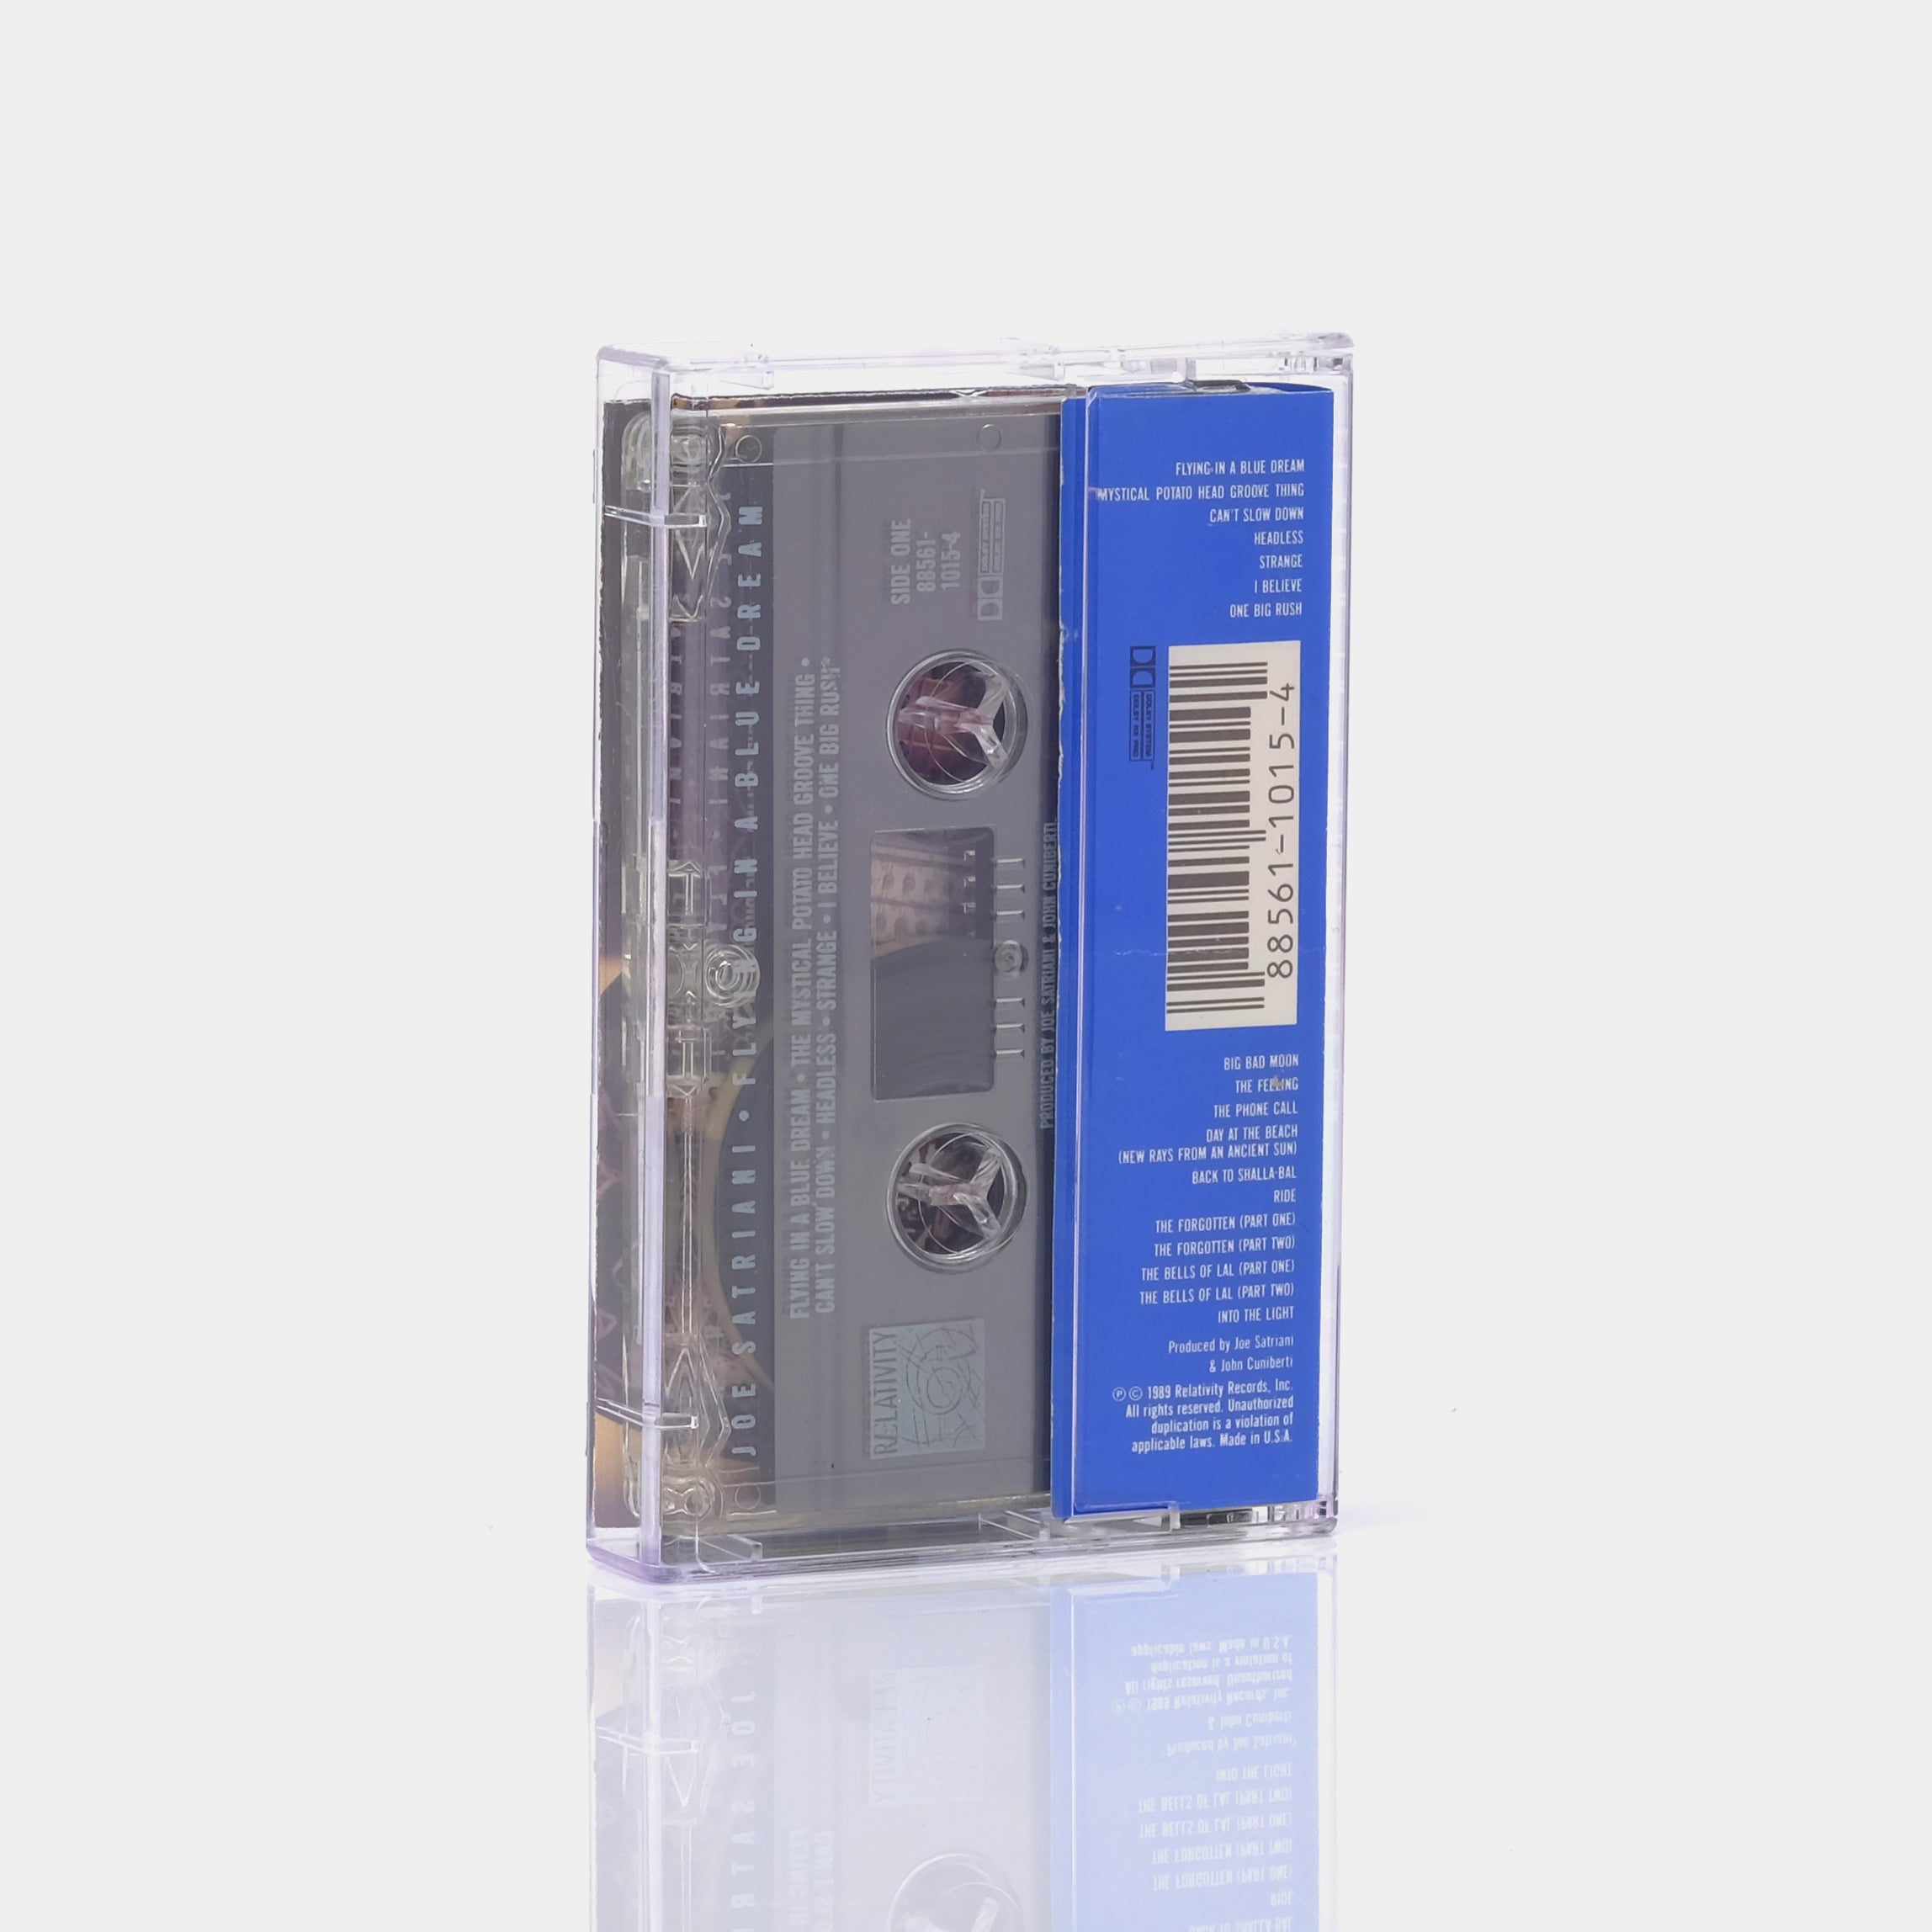 Joe Satriani - Flying In A Blue Dream Cassette Tape